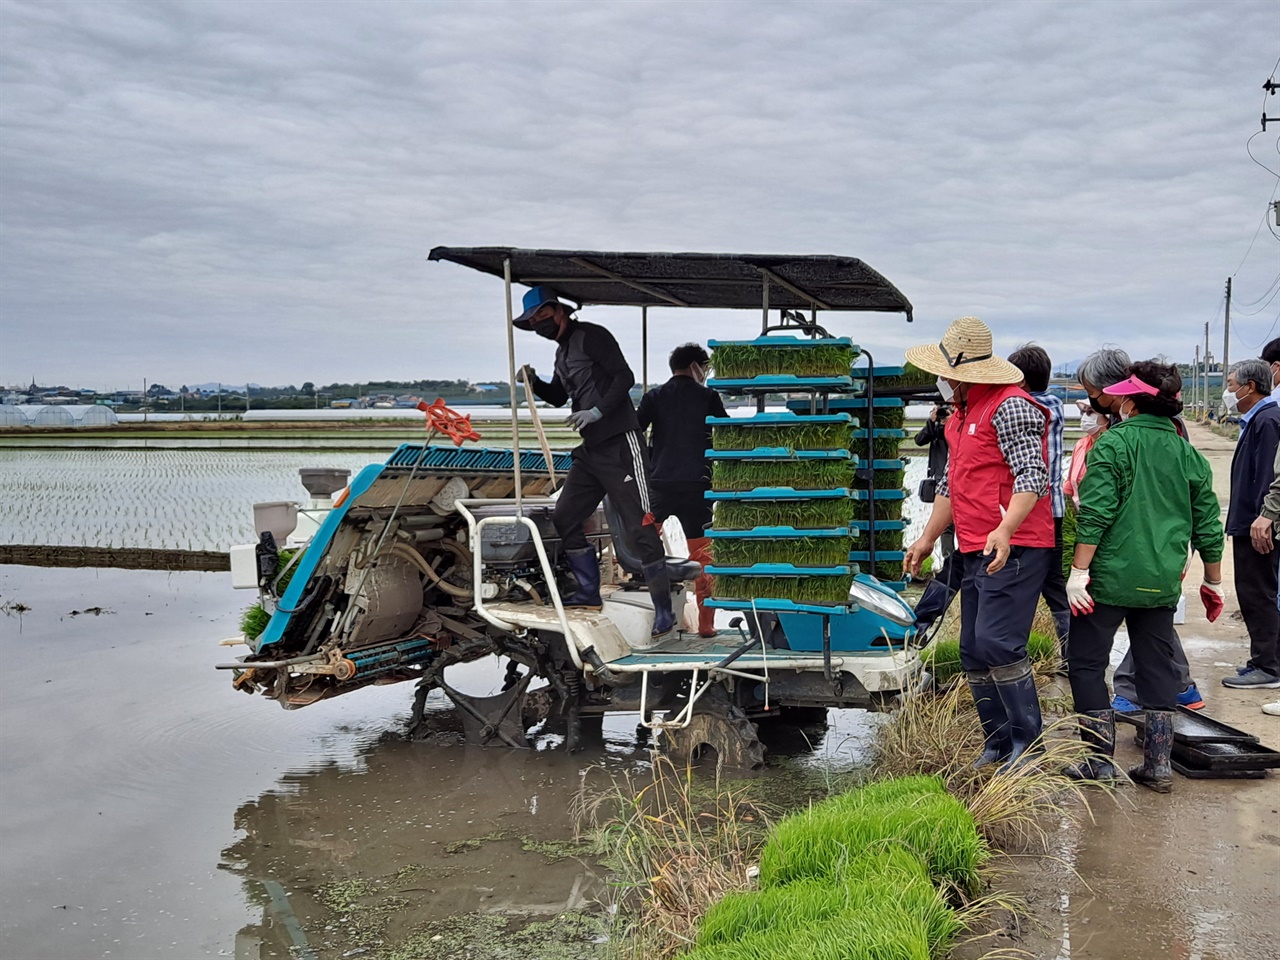  전국농민회 충남도연맹 소속 예산군농민회가 통일 쌀을 심고 있는 모습.  